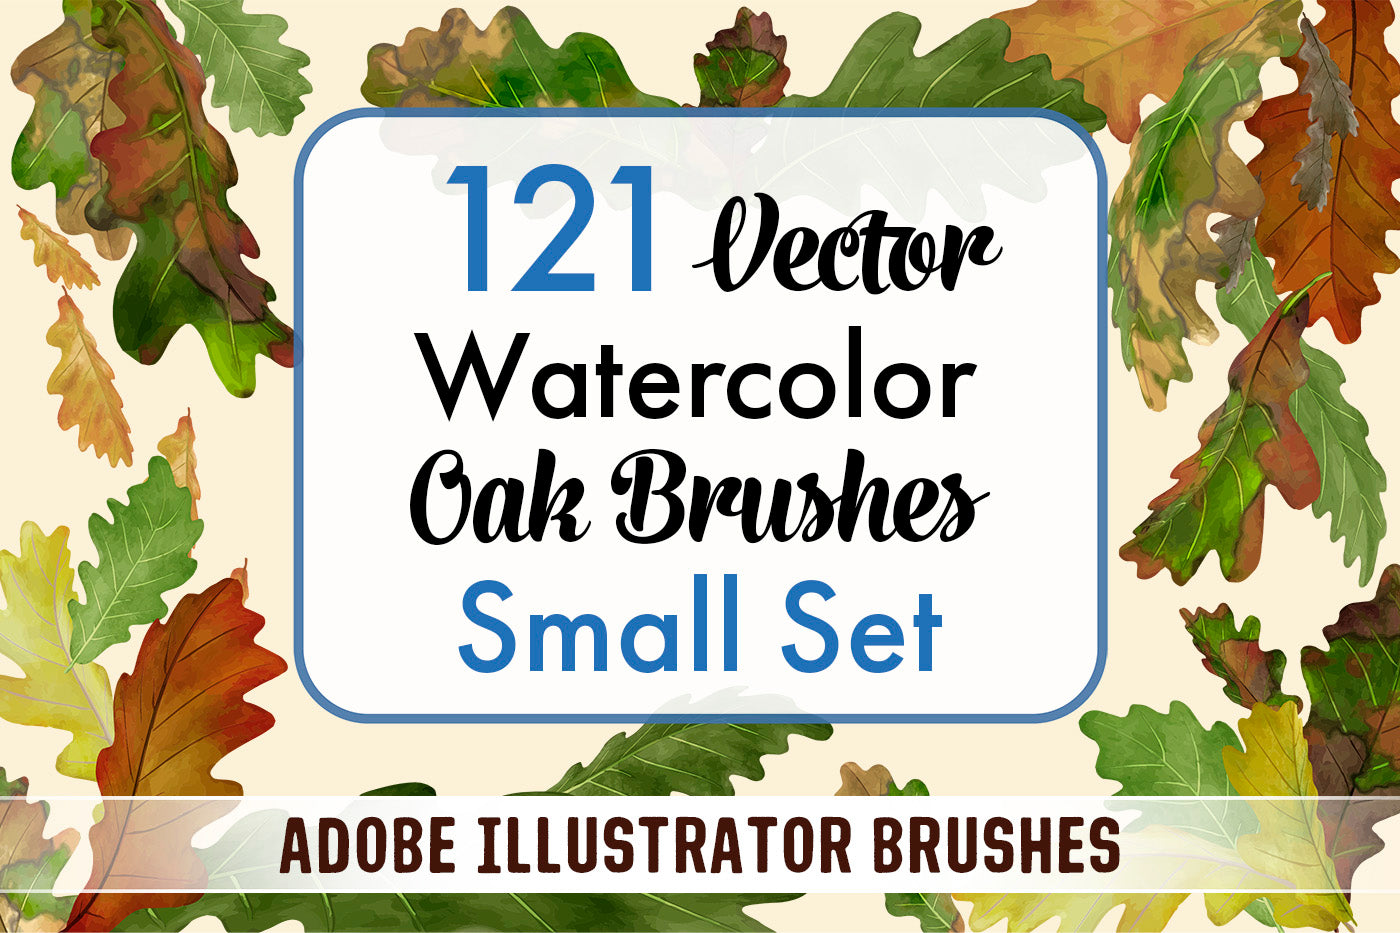 Bundle - Leaves Brushes Small Set - Adobe Illustrator Brushes